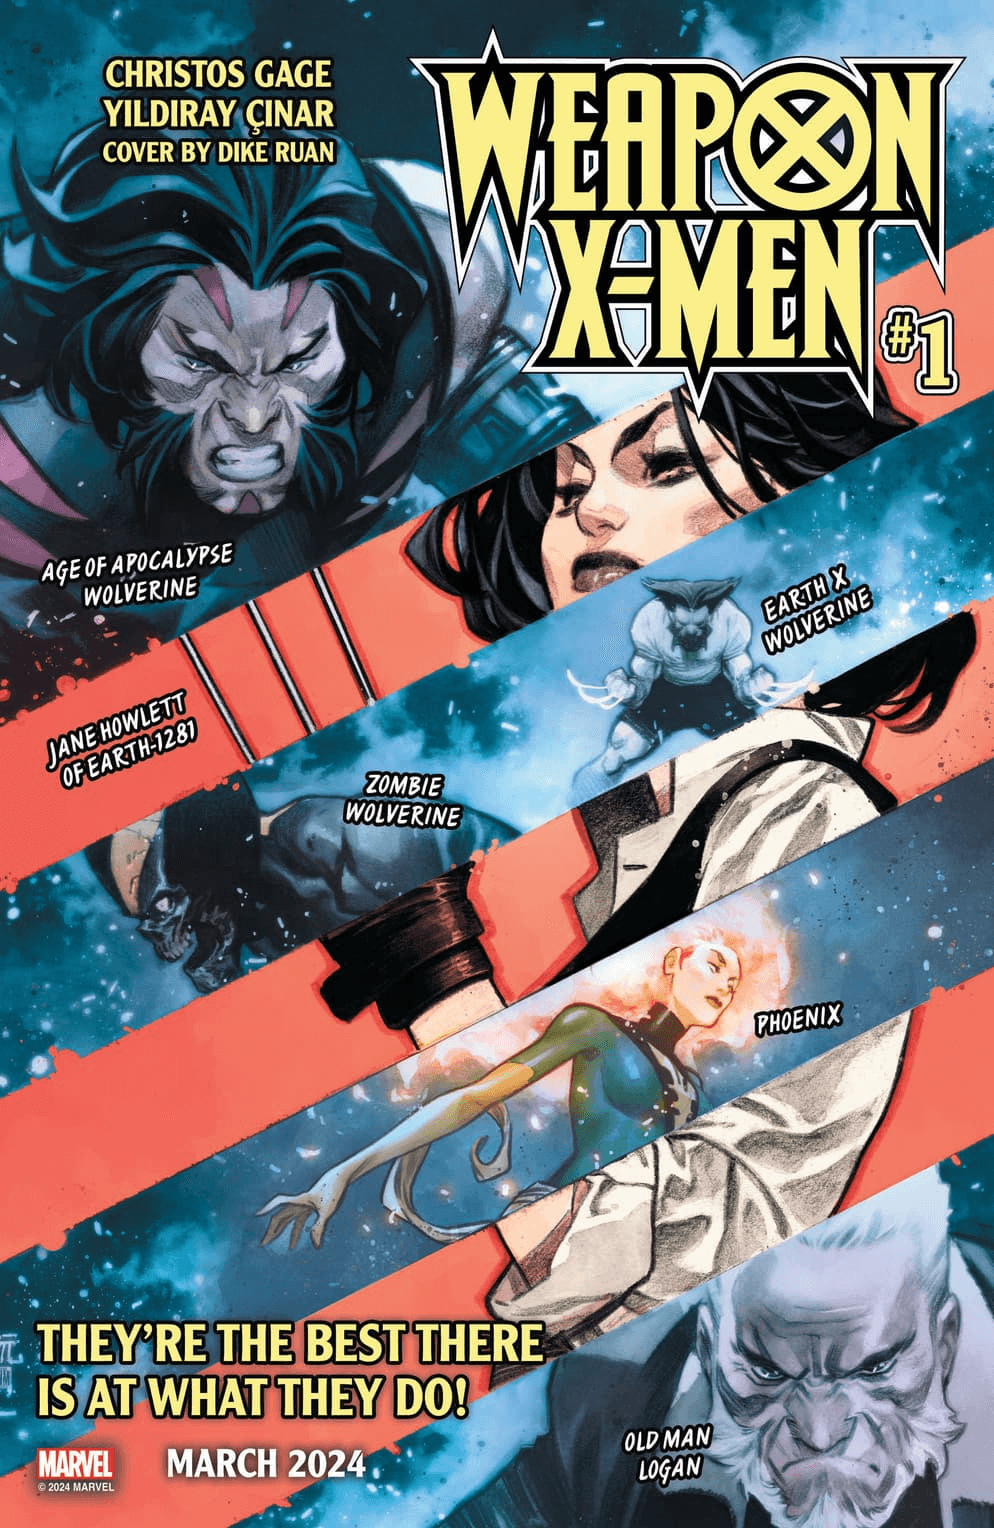 Cover di Weapon X-Men 1 di Dike Ruan